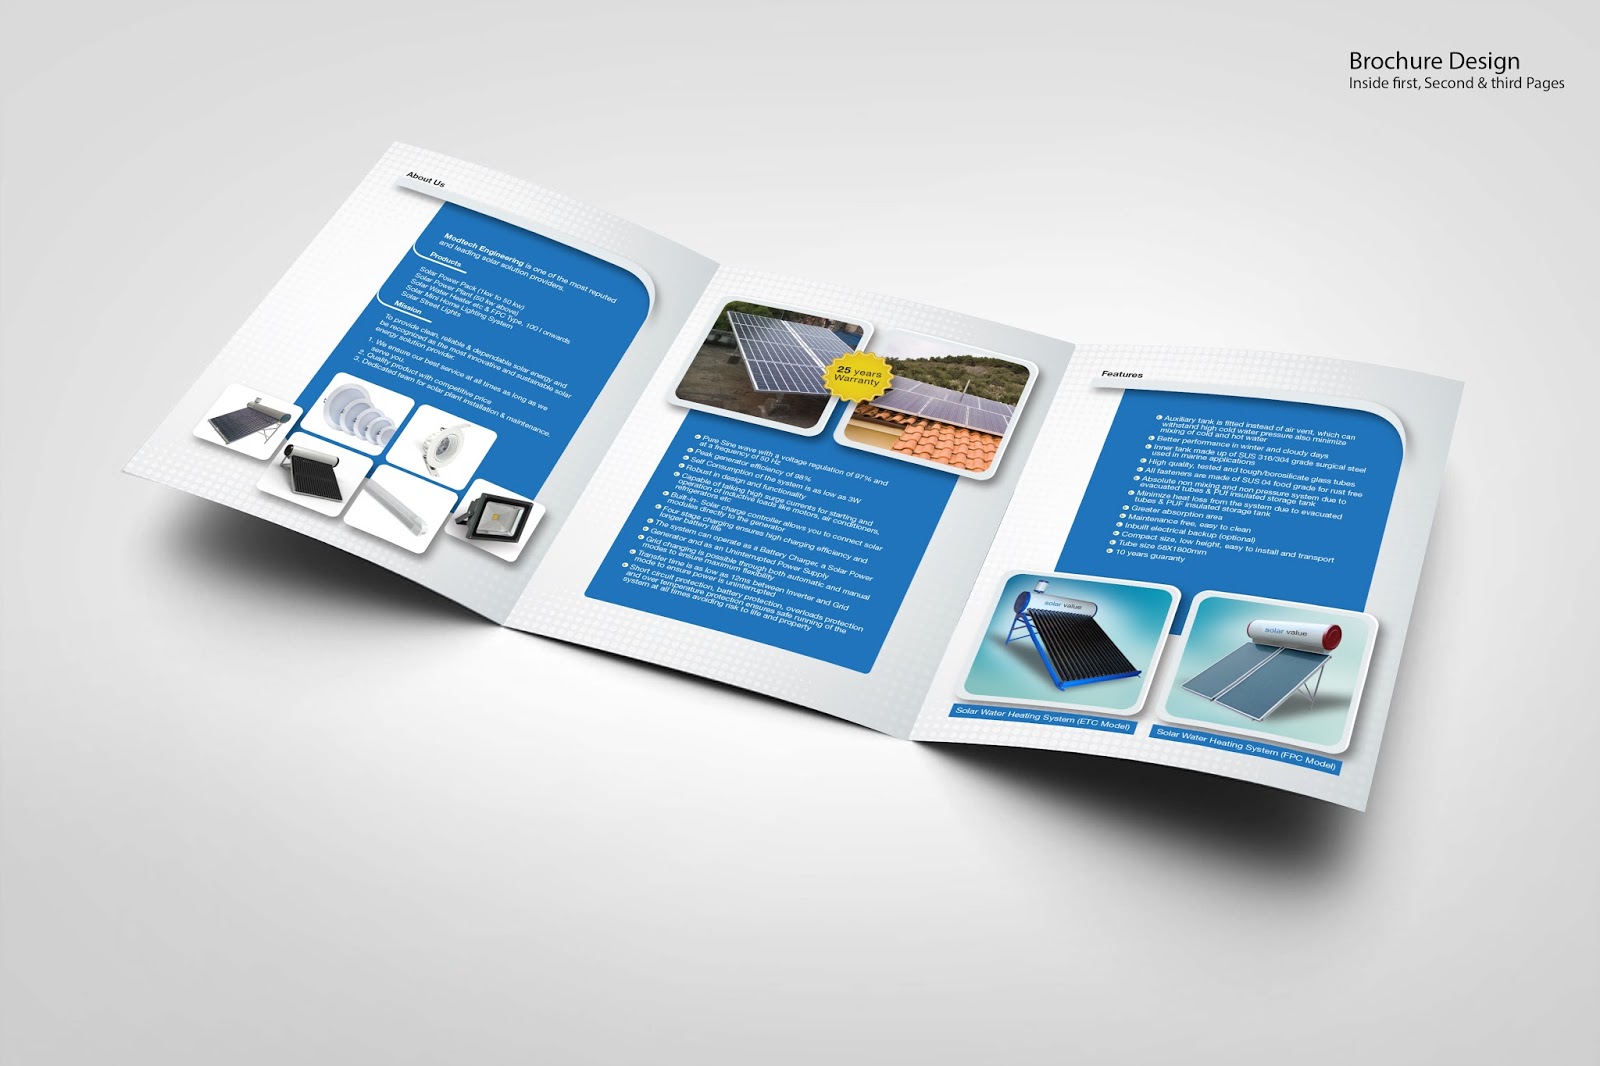 Буклет в тетради. Брошюра дизайн. Брошюра оборудования. Company Brochure Design. Design Brochure ICT.